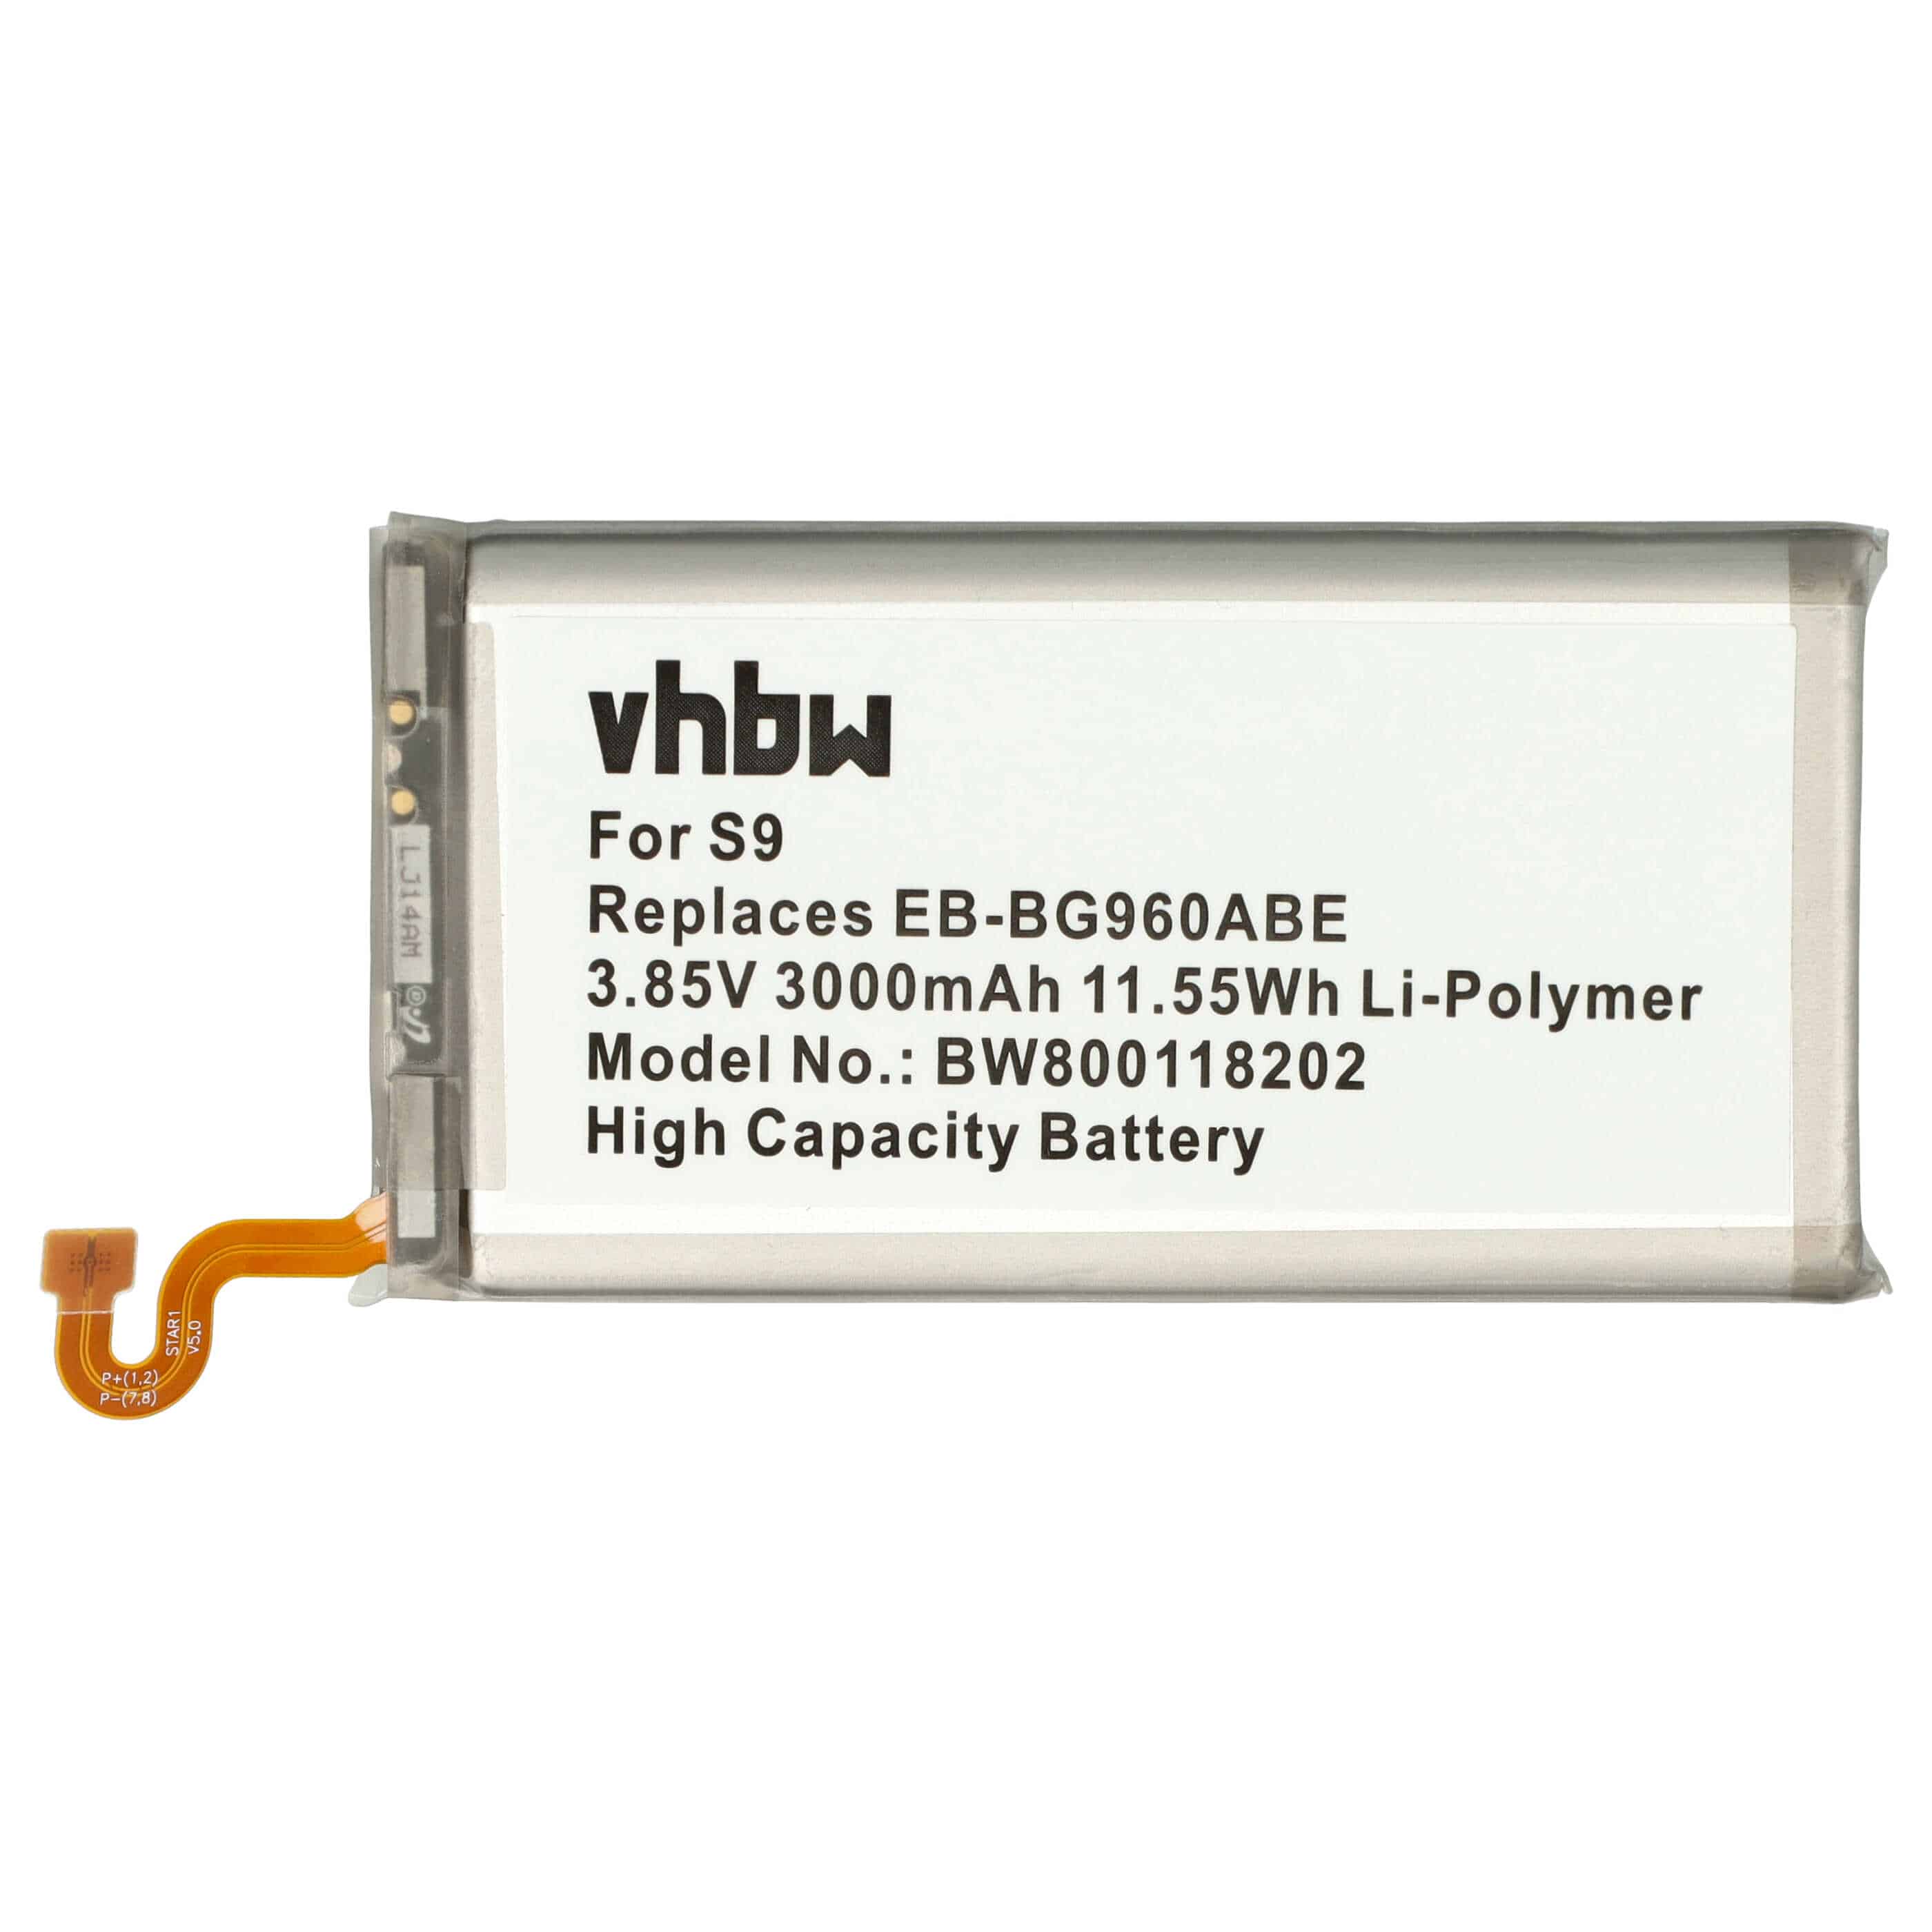 Batterie remplace Samsung EB-BG960ABE pour téléphone portable - 3000mAh, 3,85V, Li-polymère